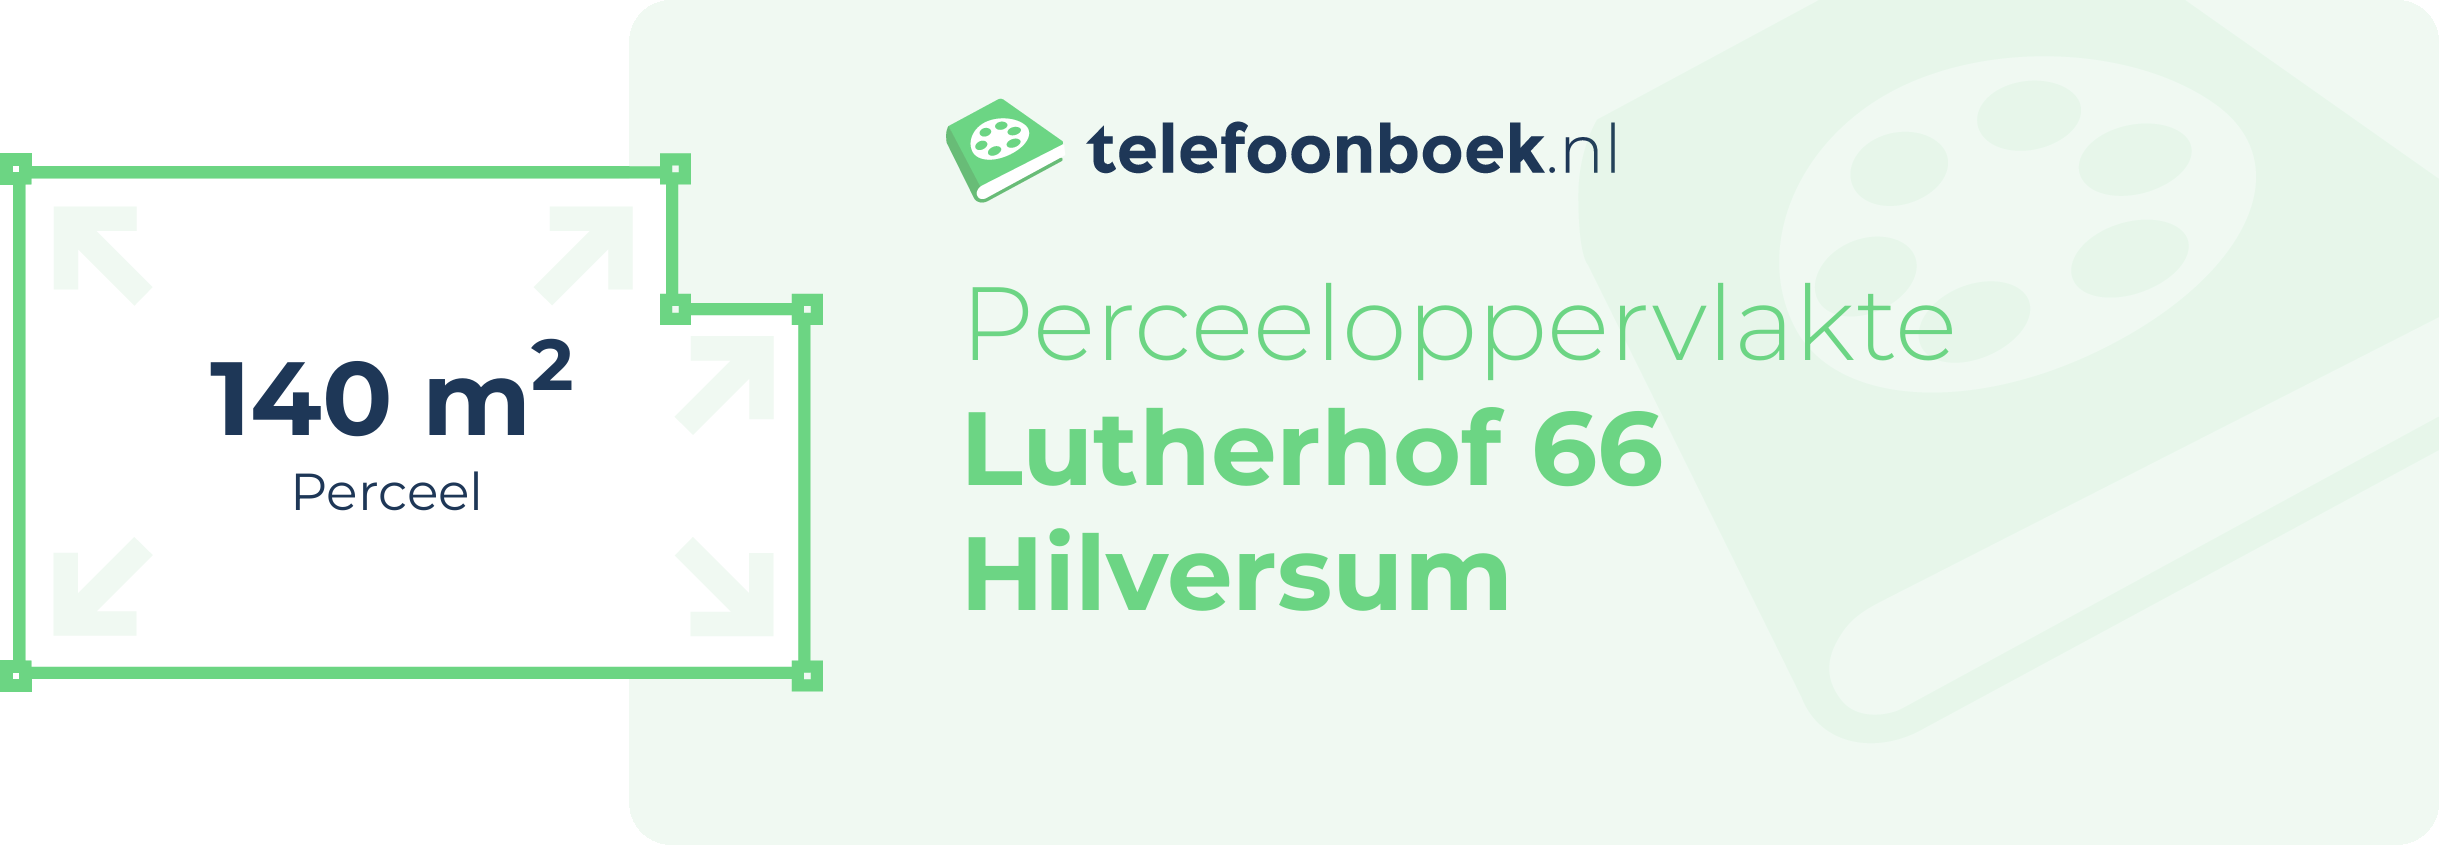 Perceeloppervlakte Lutherhof 66 Hilversum